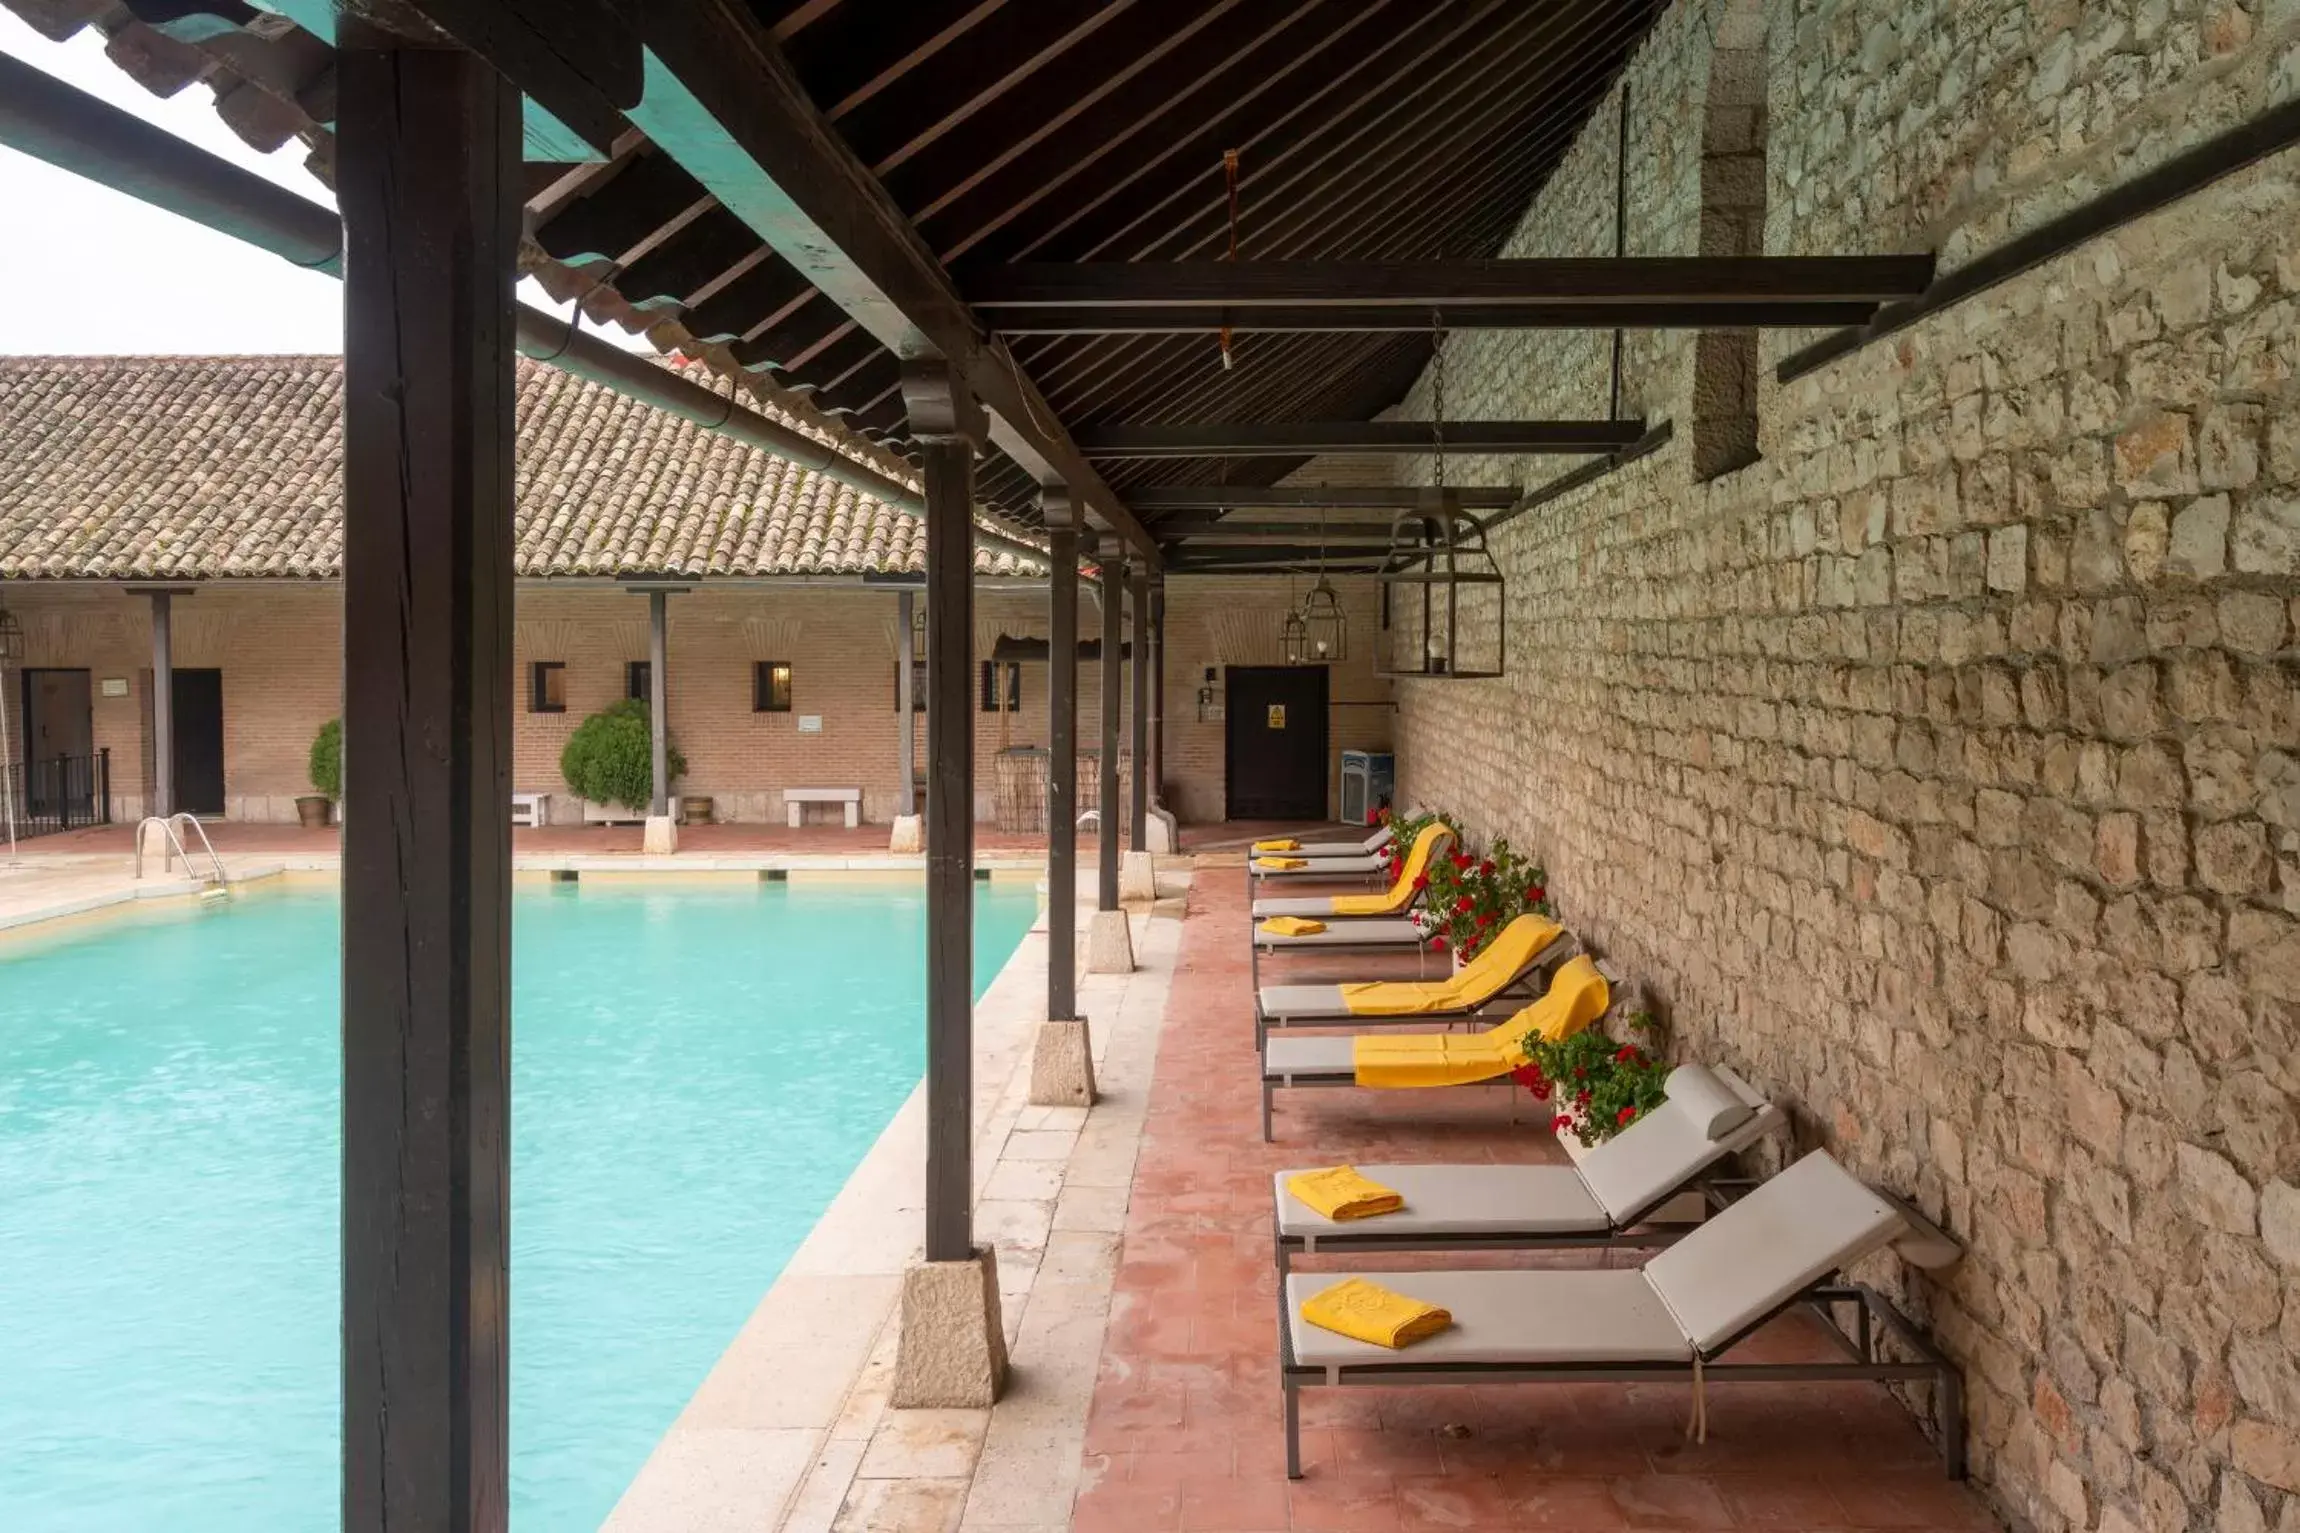 Swimming Pool in Parador de Chinchón